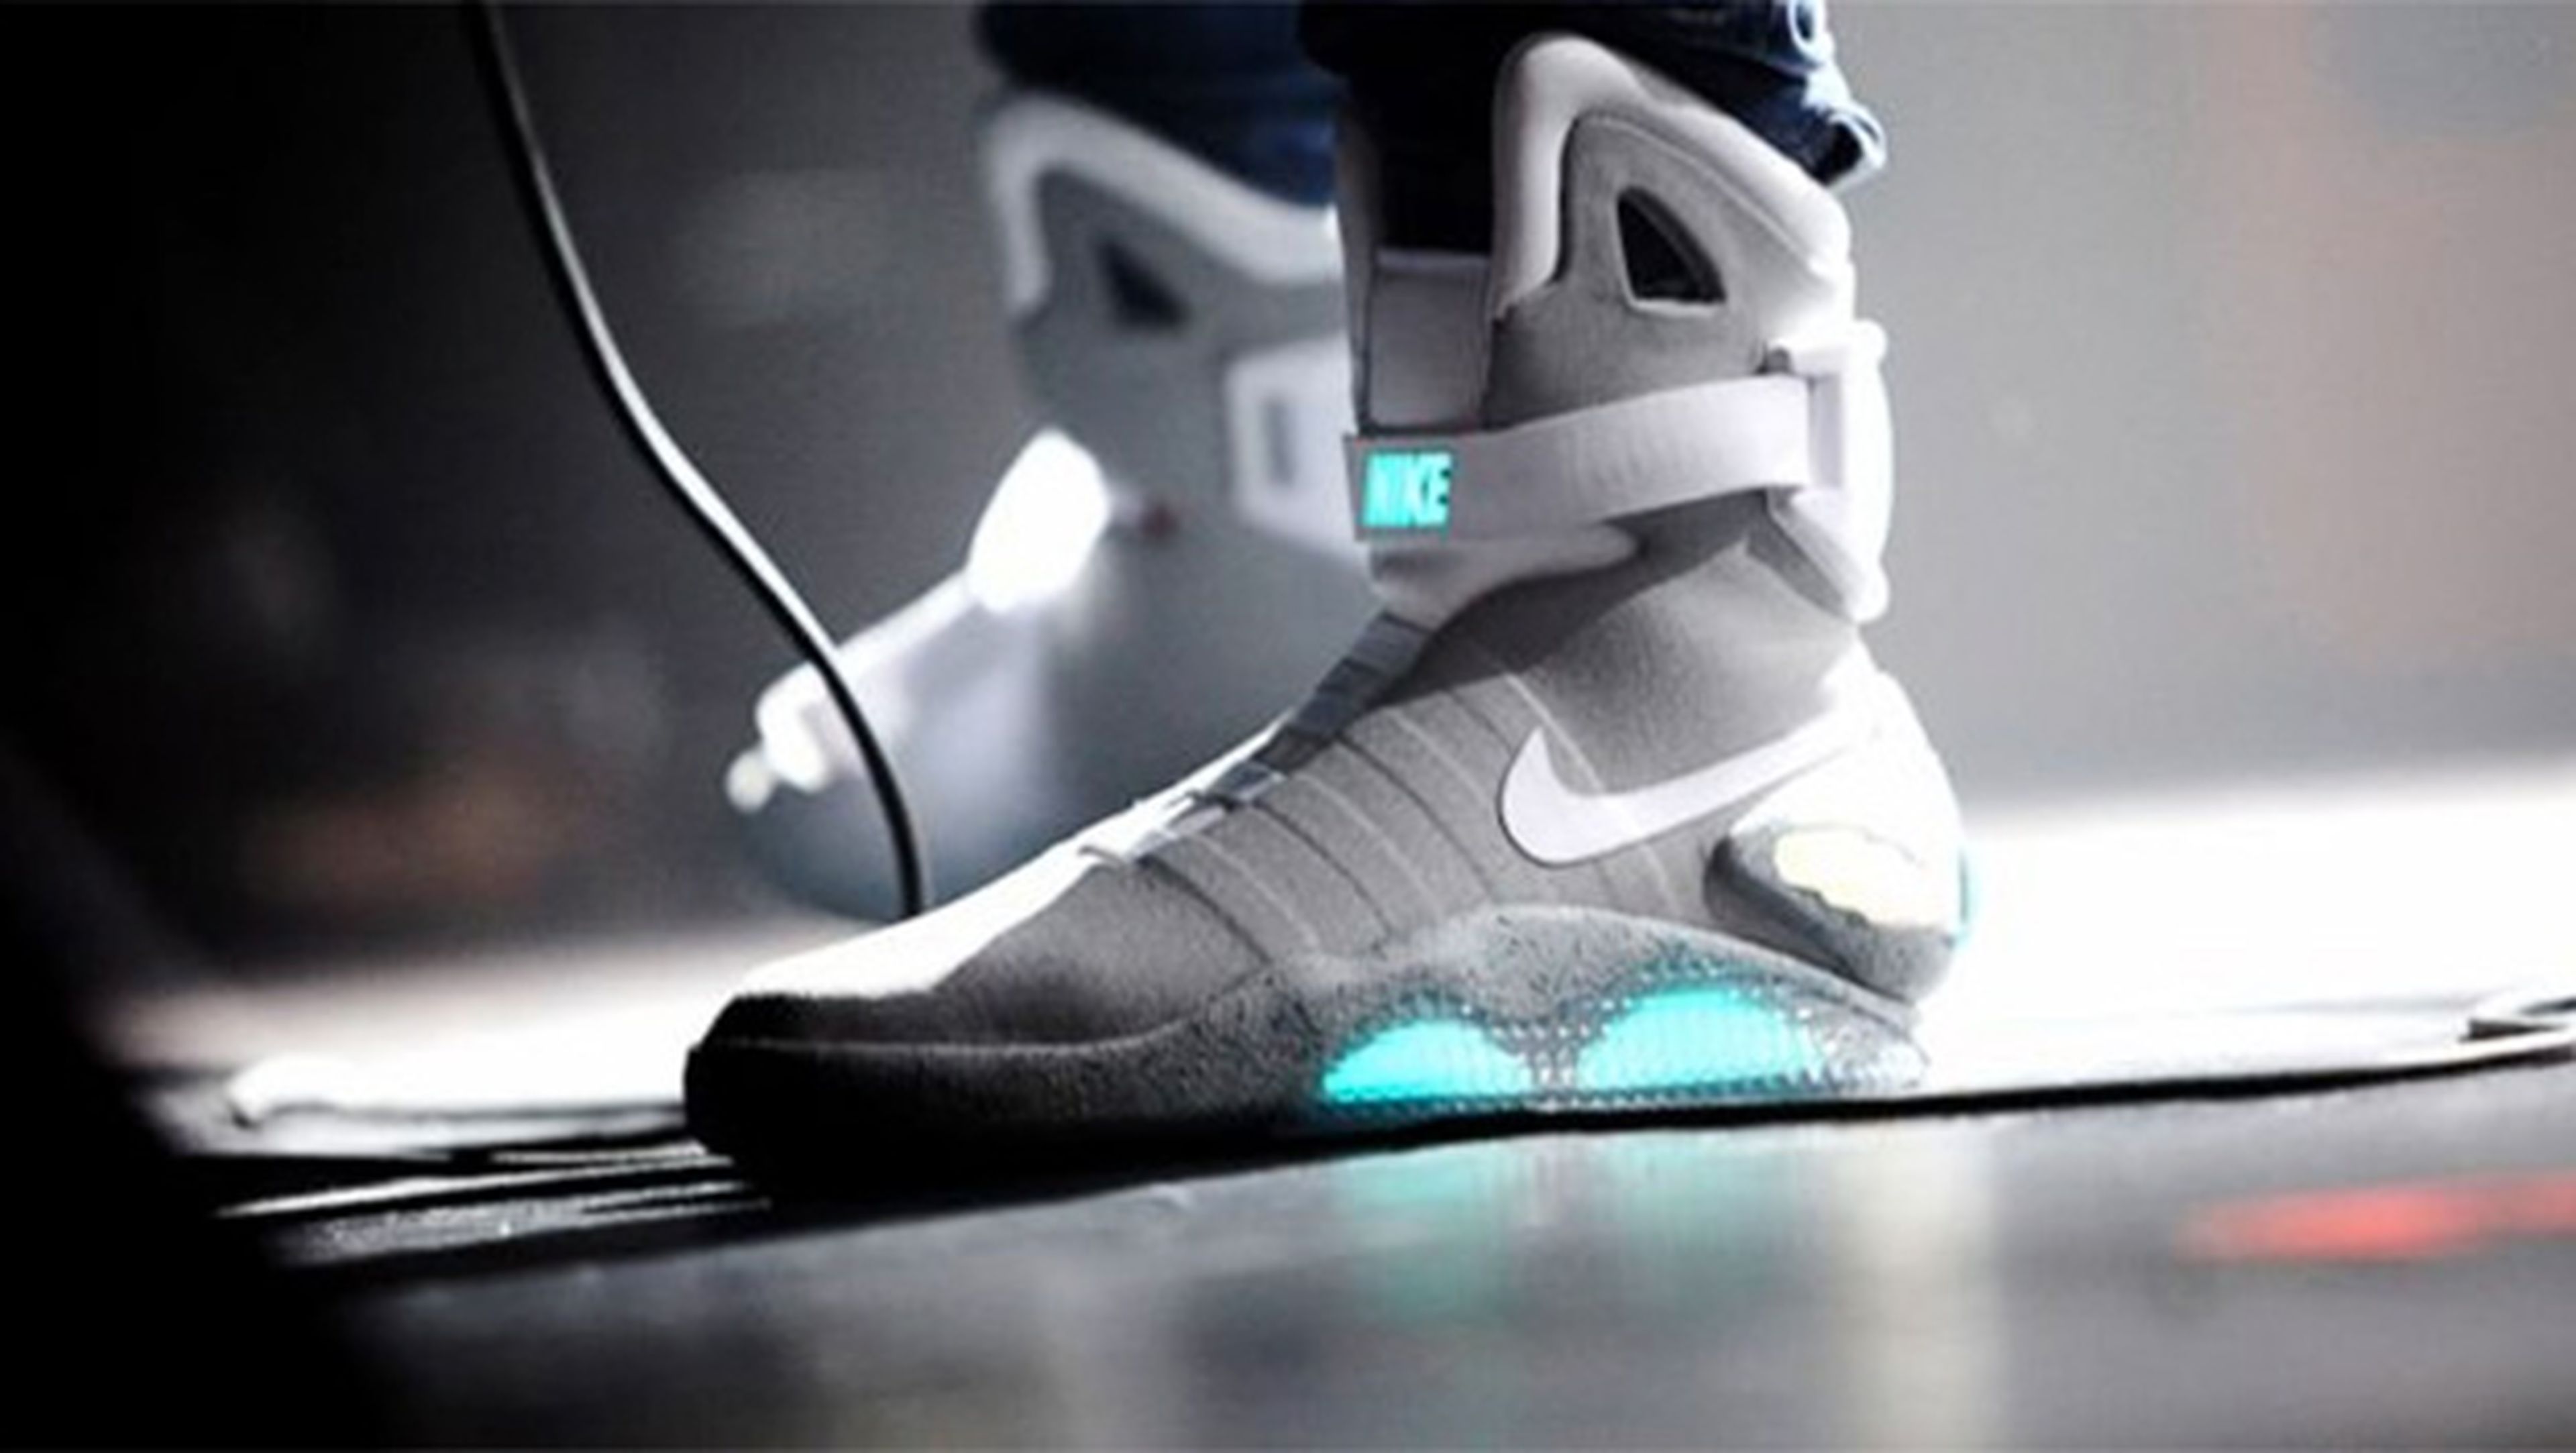 Predicciones acertadas Regreso al Futuro II 2015: Zapatillas Nike